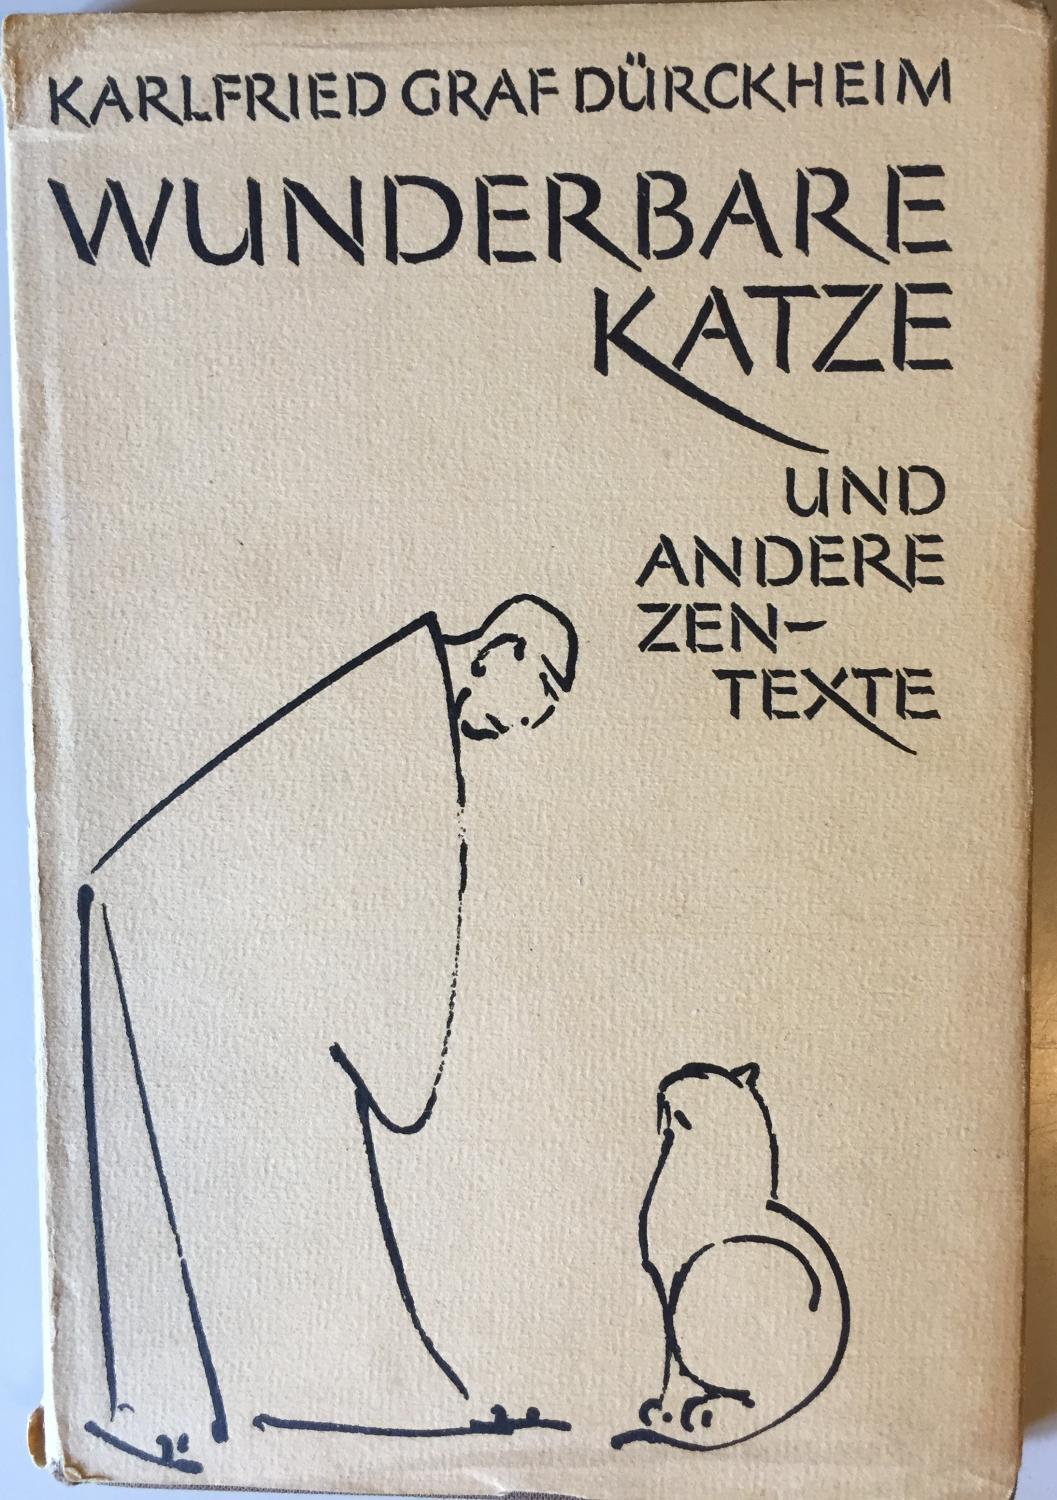 Wunderbare Katze und andere Zen - Texte. - Dürckheim, Karlfried Graf